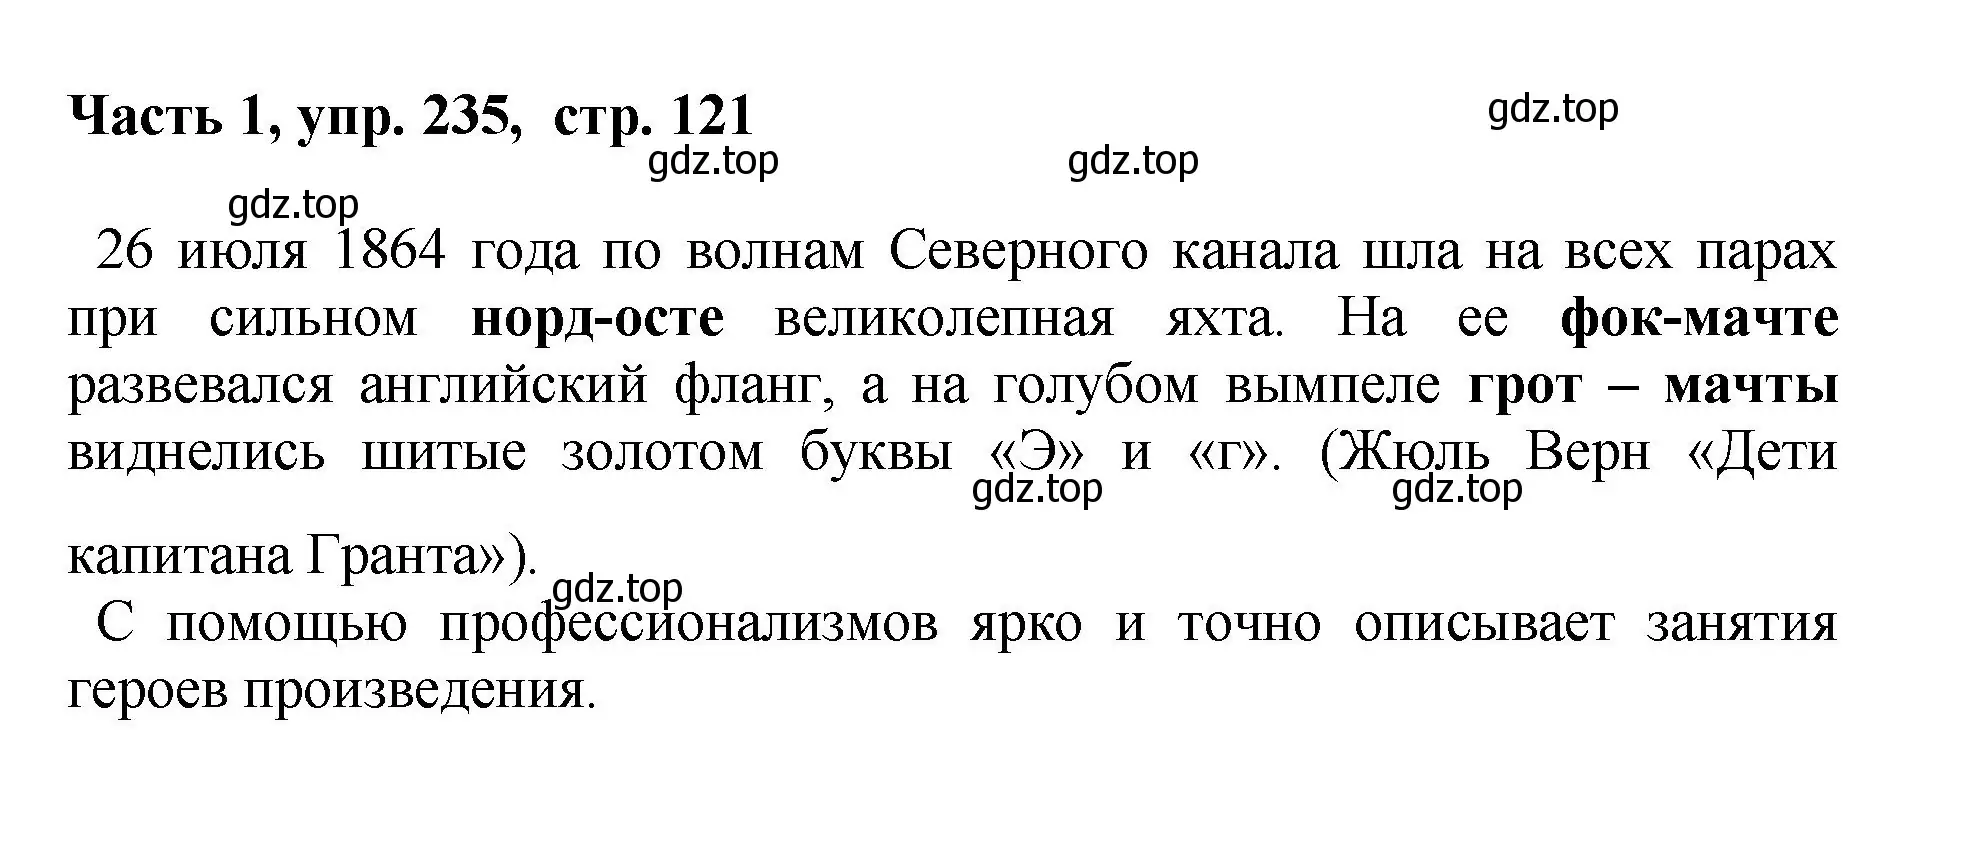 Решение номер 235 (страница 121) гдз по русскому языку 6 класс Баранов, Ладыженская, учебник 1 часть